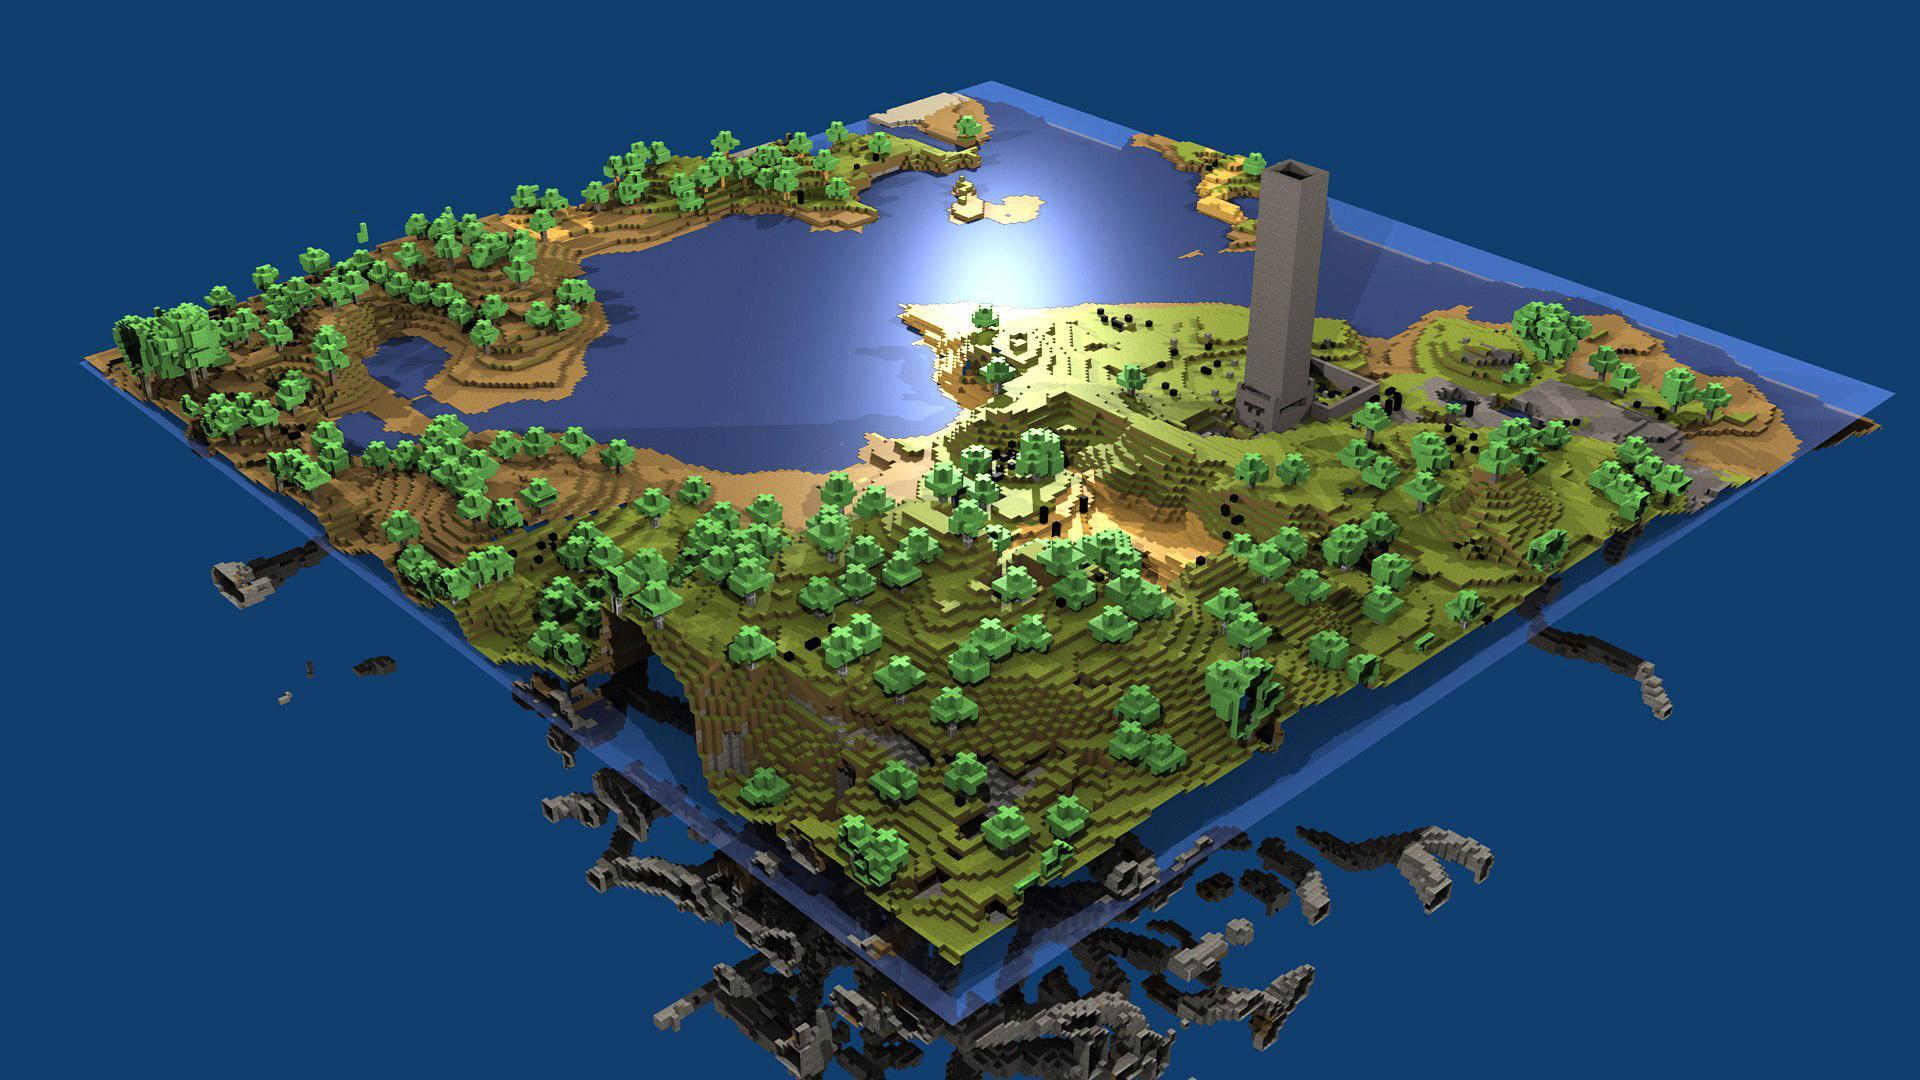 Minecraft World HD desktop wallpaper, Widescreen, High Definition